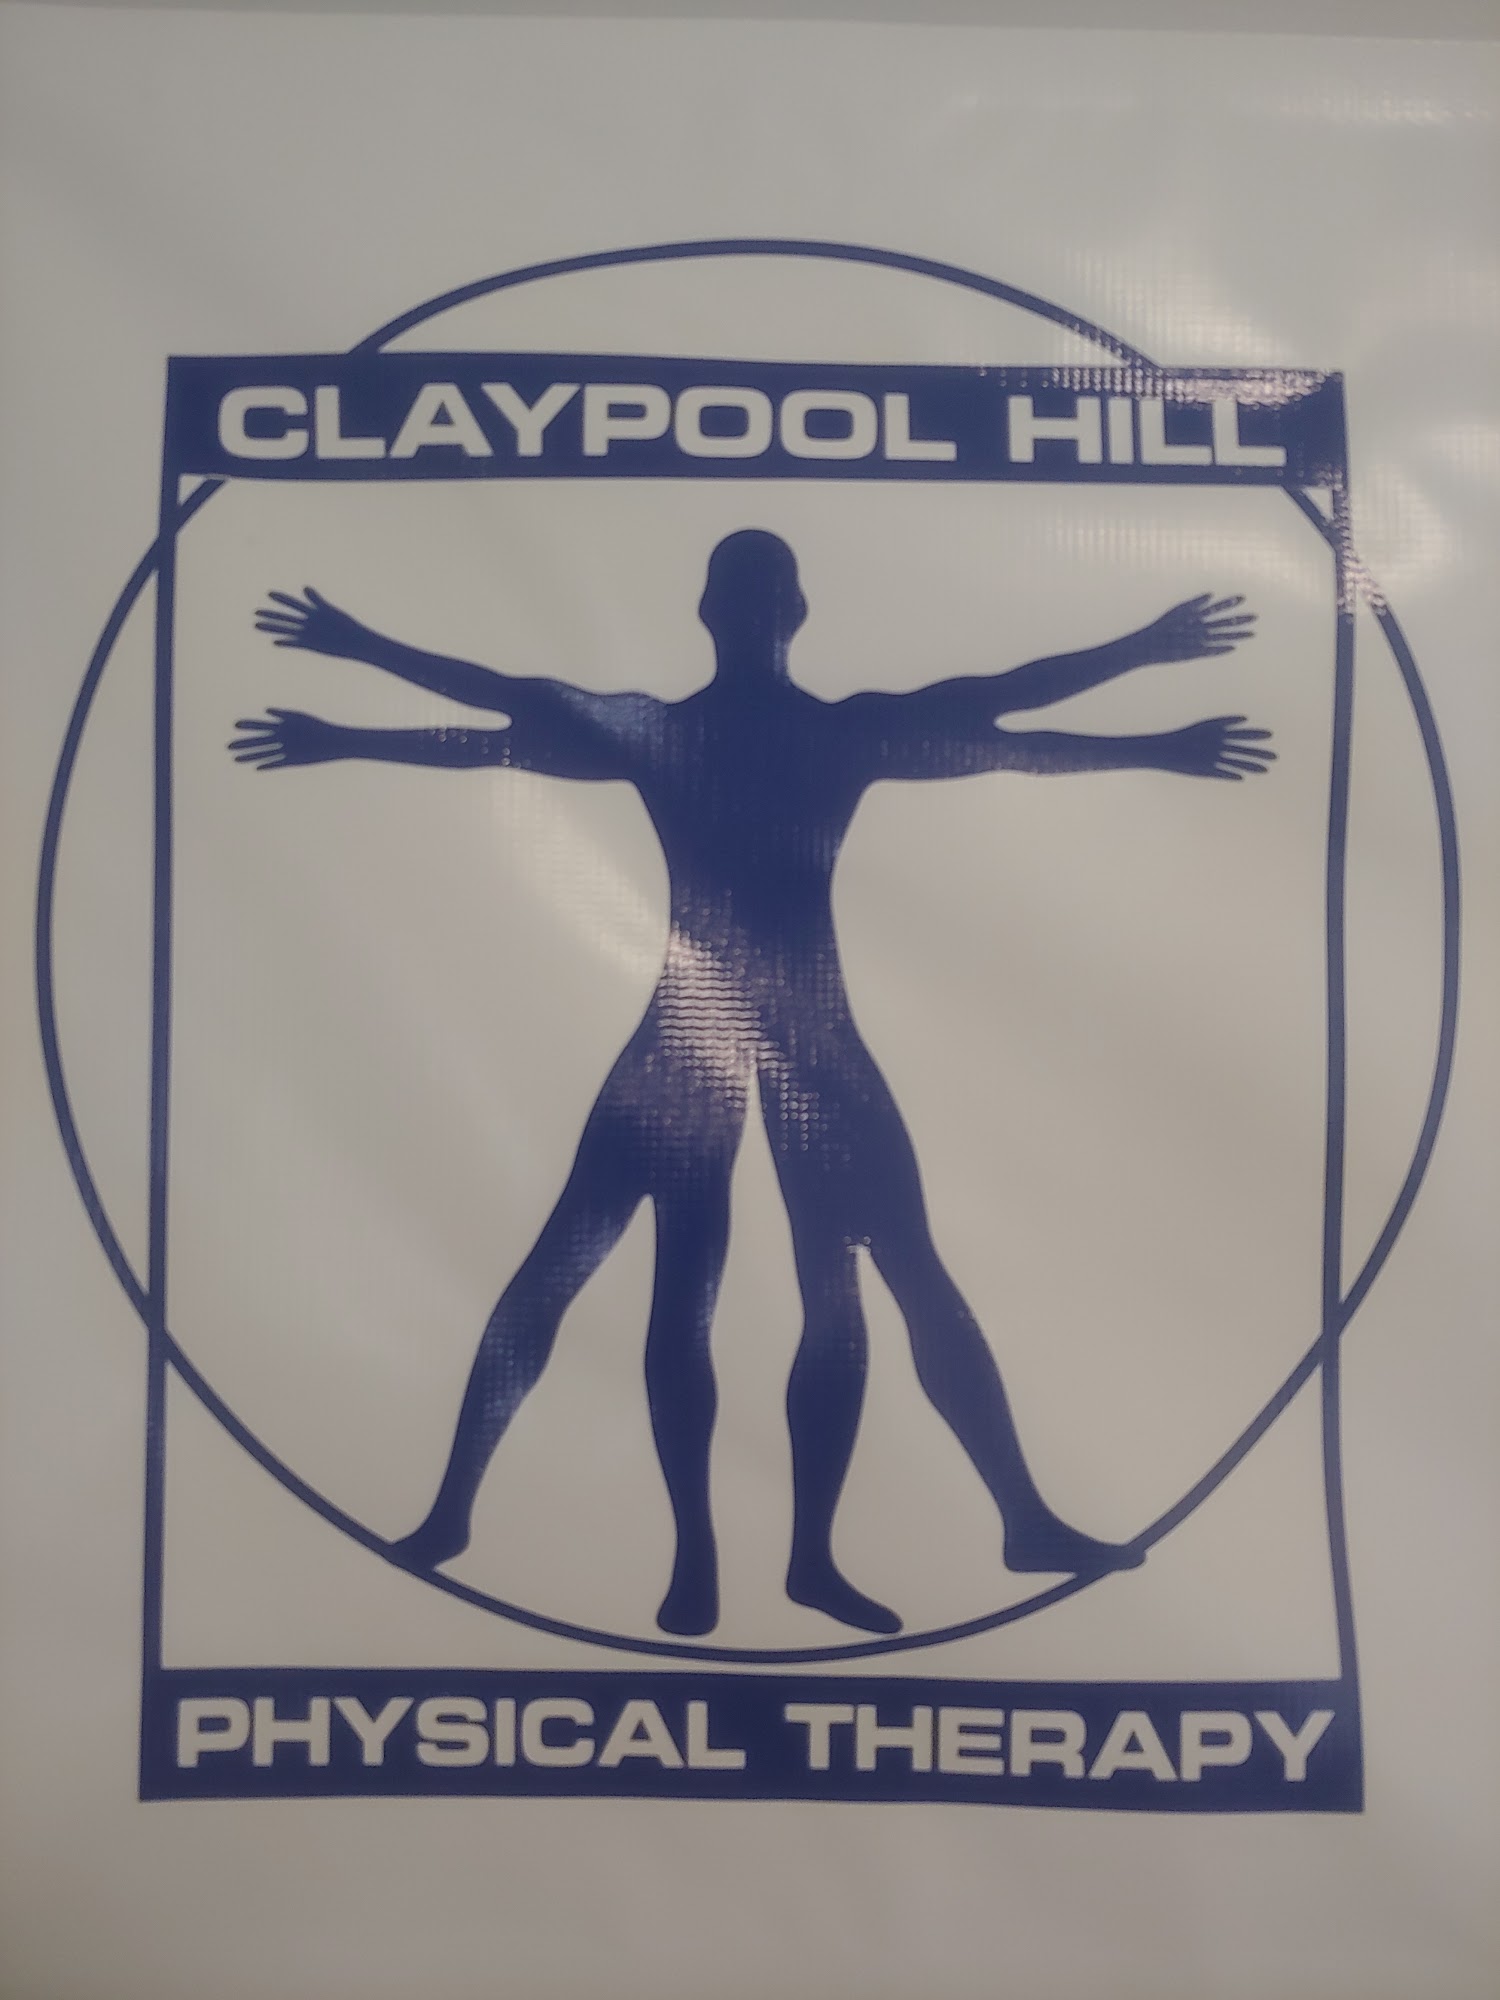 Claypool Hill Physical Therapy 177 Wellness Dr, Cedar Bluff Virginia 24609